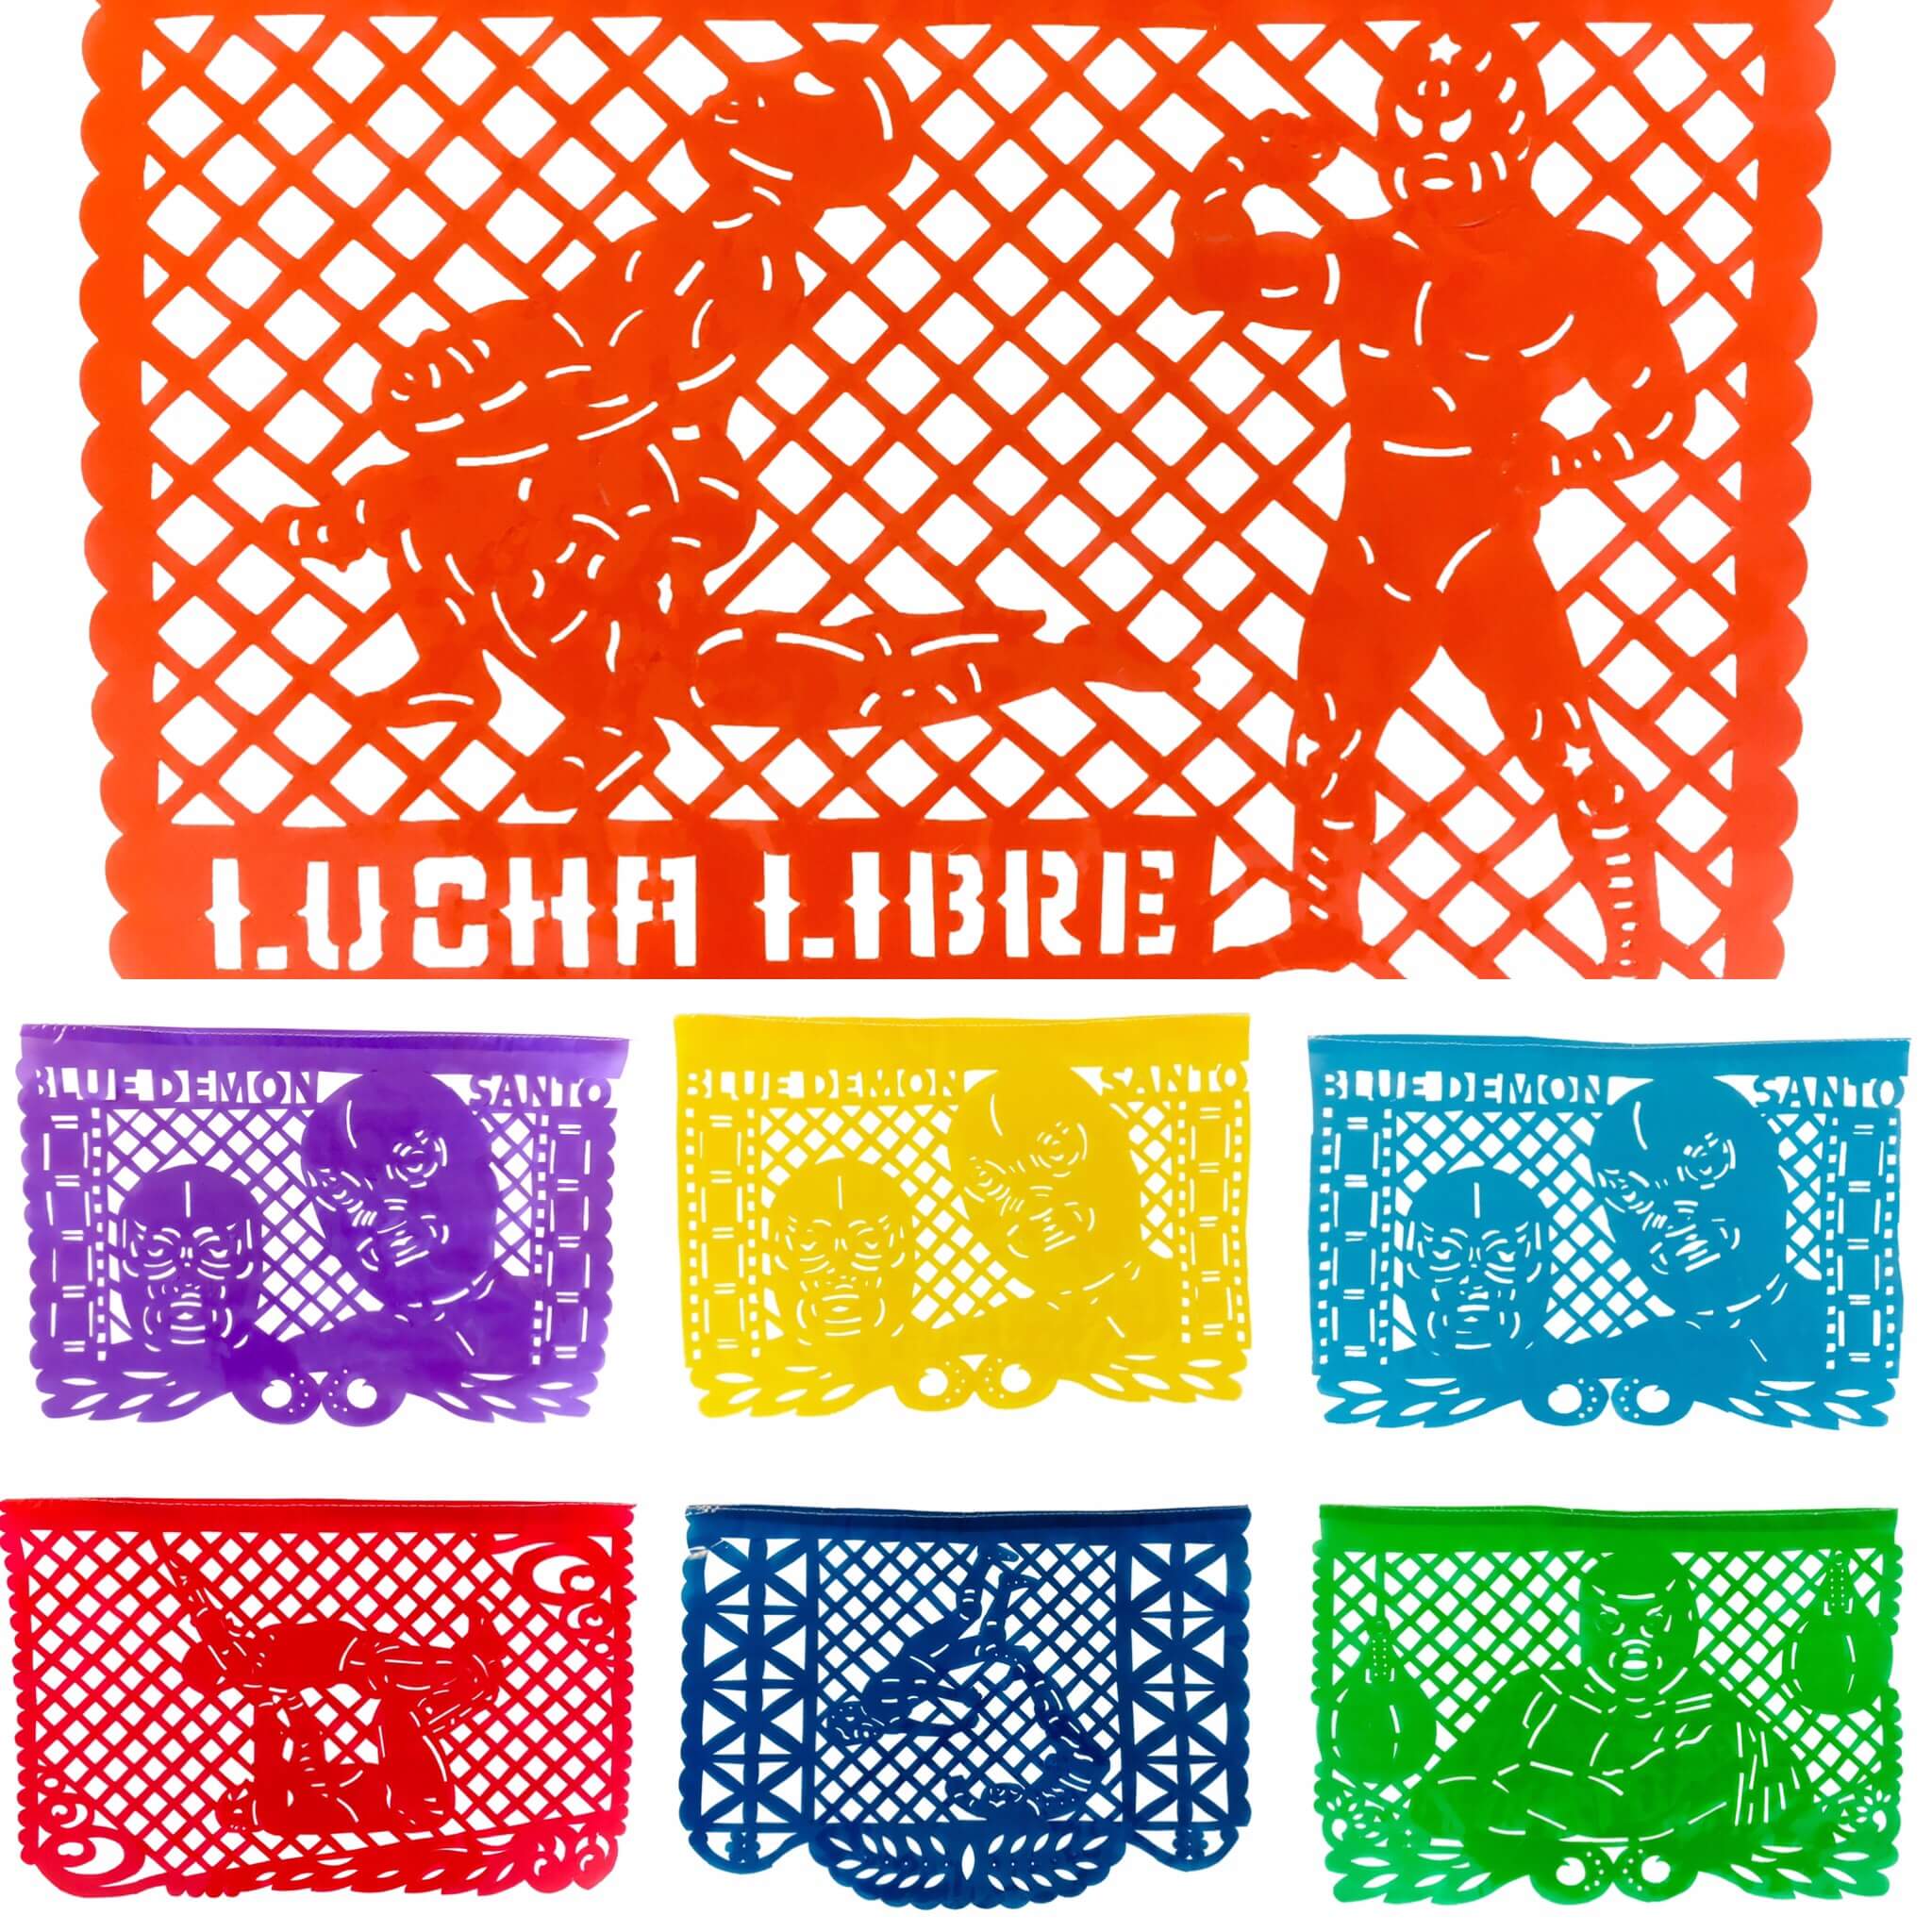 Lucha Libre papel picado flags handmade in Mexico.